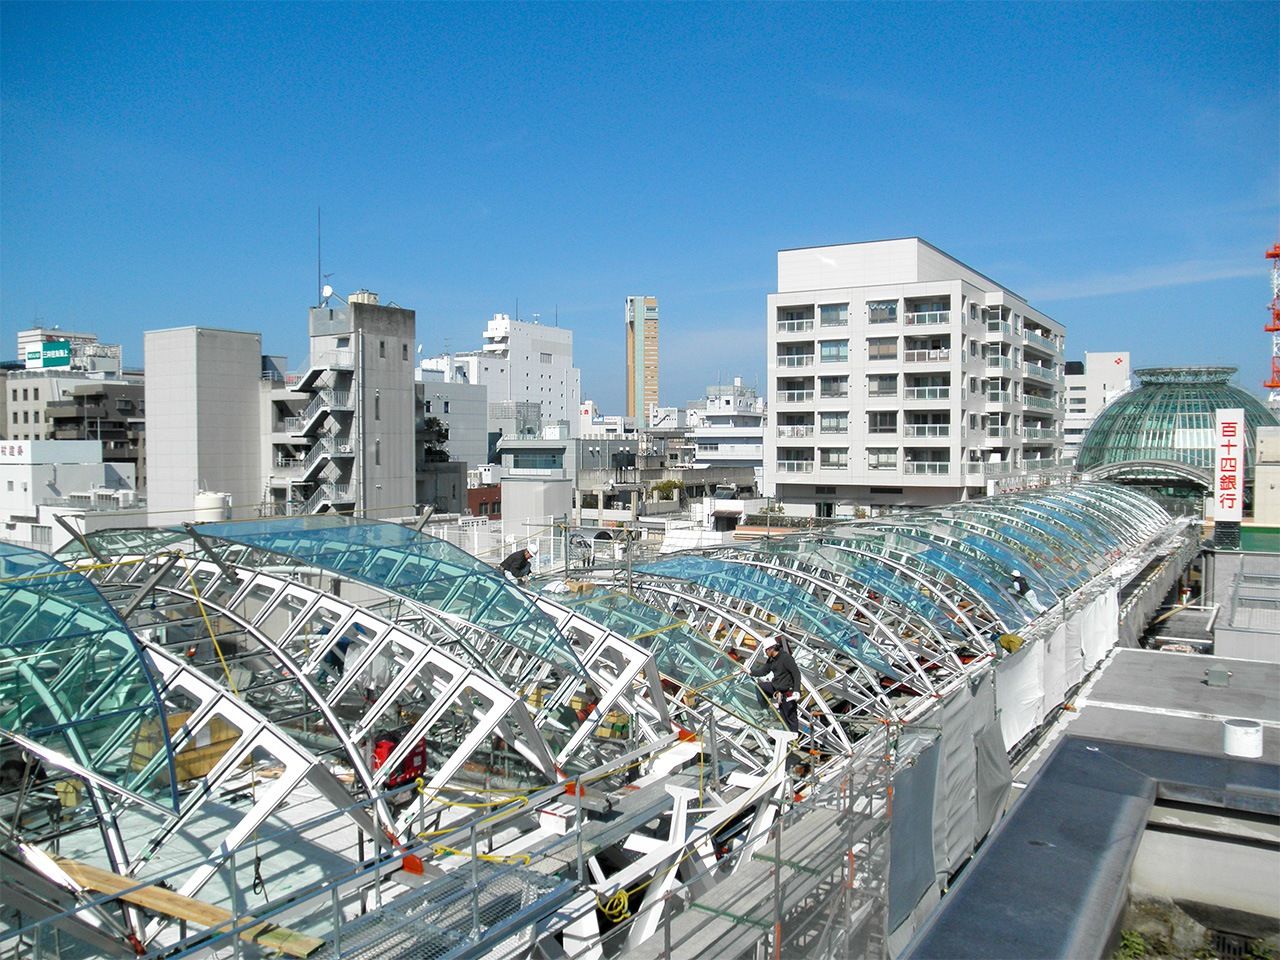 على اليمين، فوق الممرات تقف عمارات تم بناؤها بشكل مشترك من قبل جمعية تعزيز منطقة التسوق تاكاماتسو ماروغامى ماتشي دون التأثير على ملكية الأرض. الصورة من الكاتب.